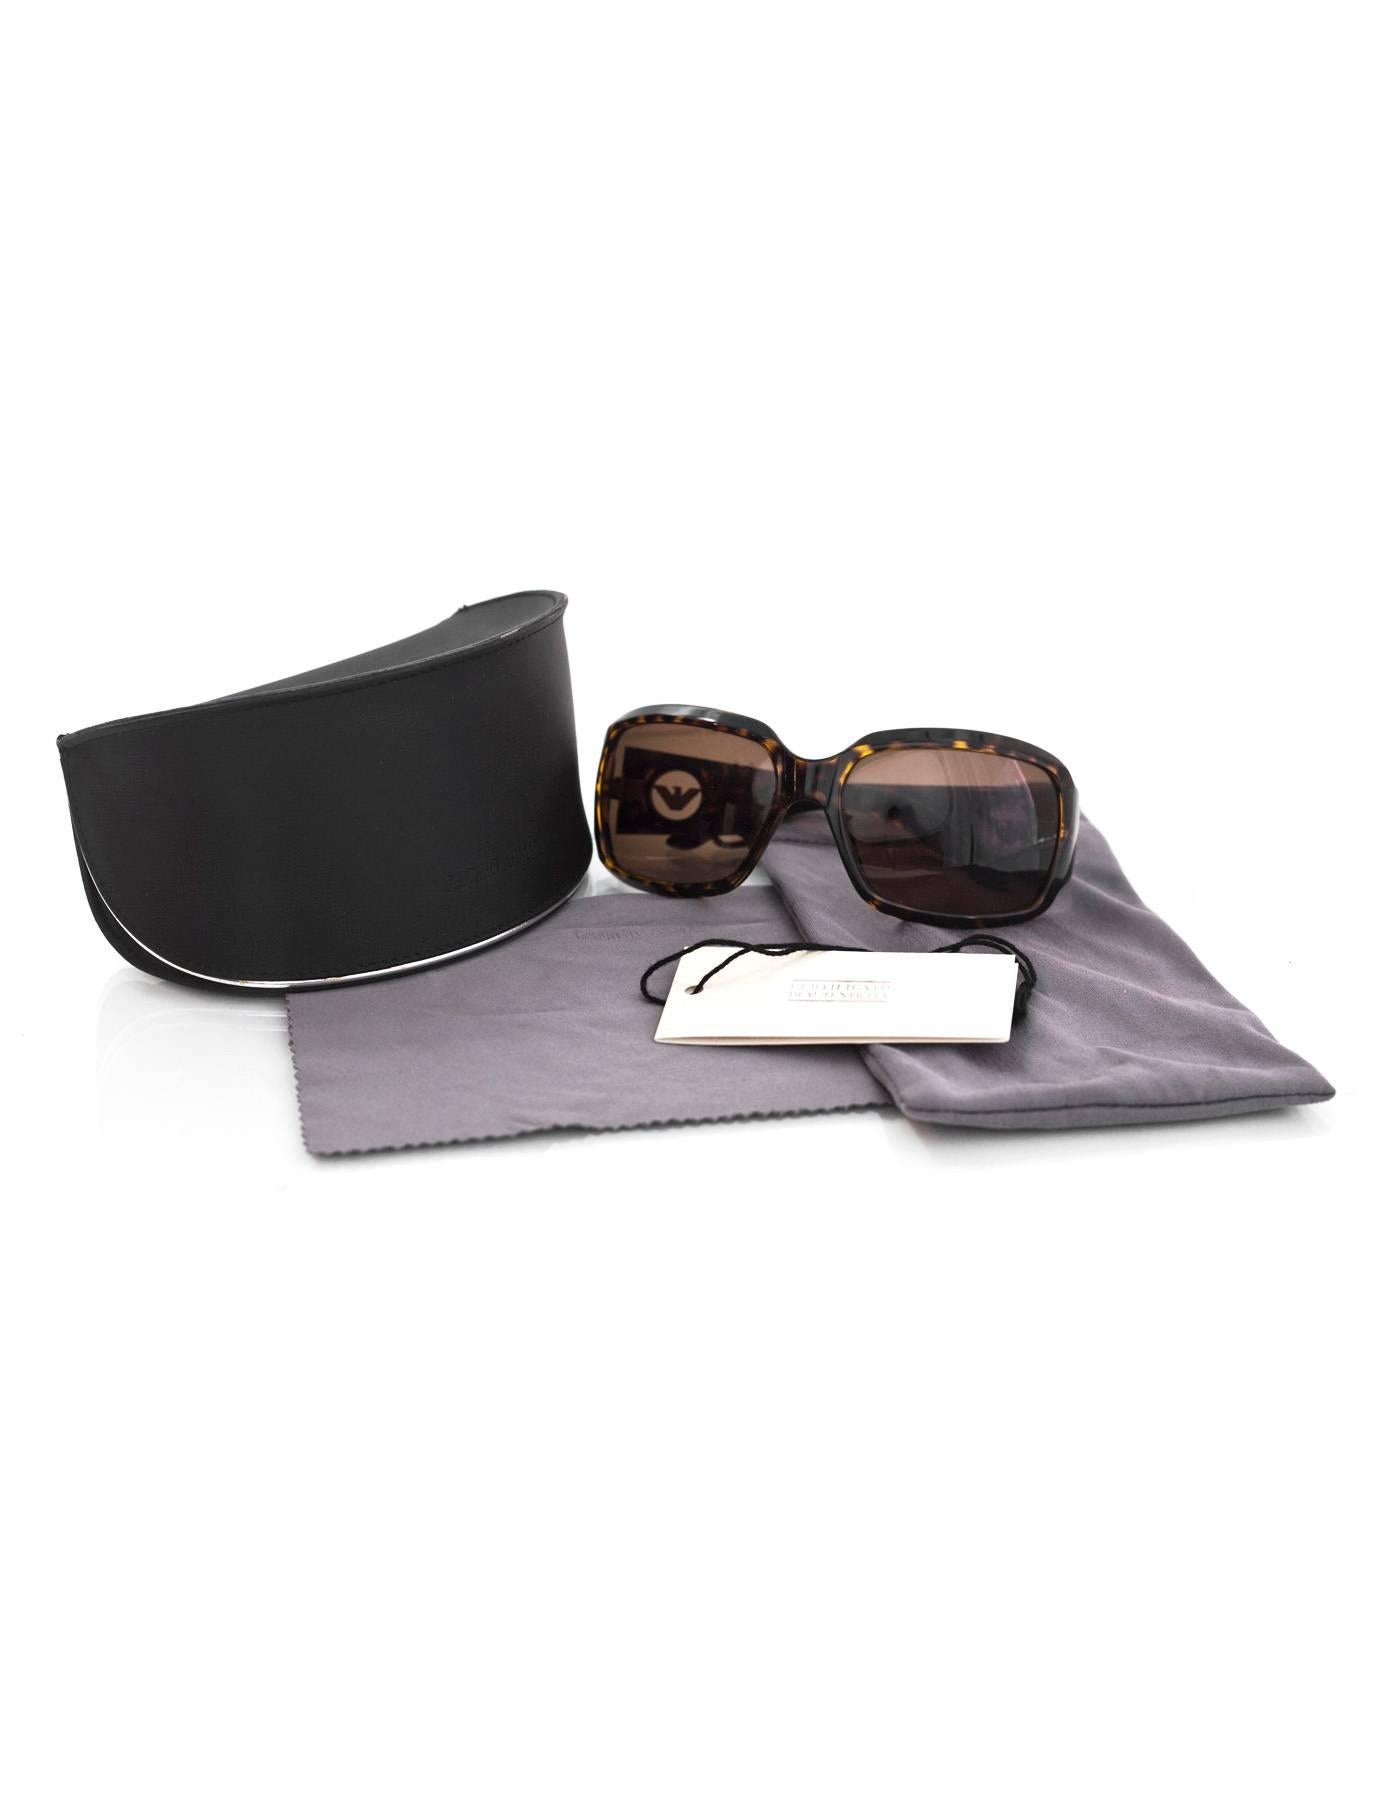 Emporio Armani Tortoise Square Sunglasses with Case 2